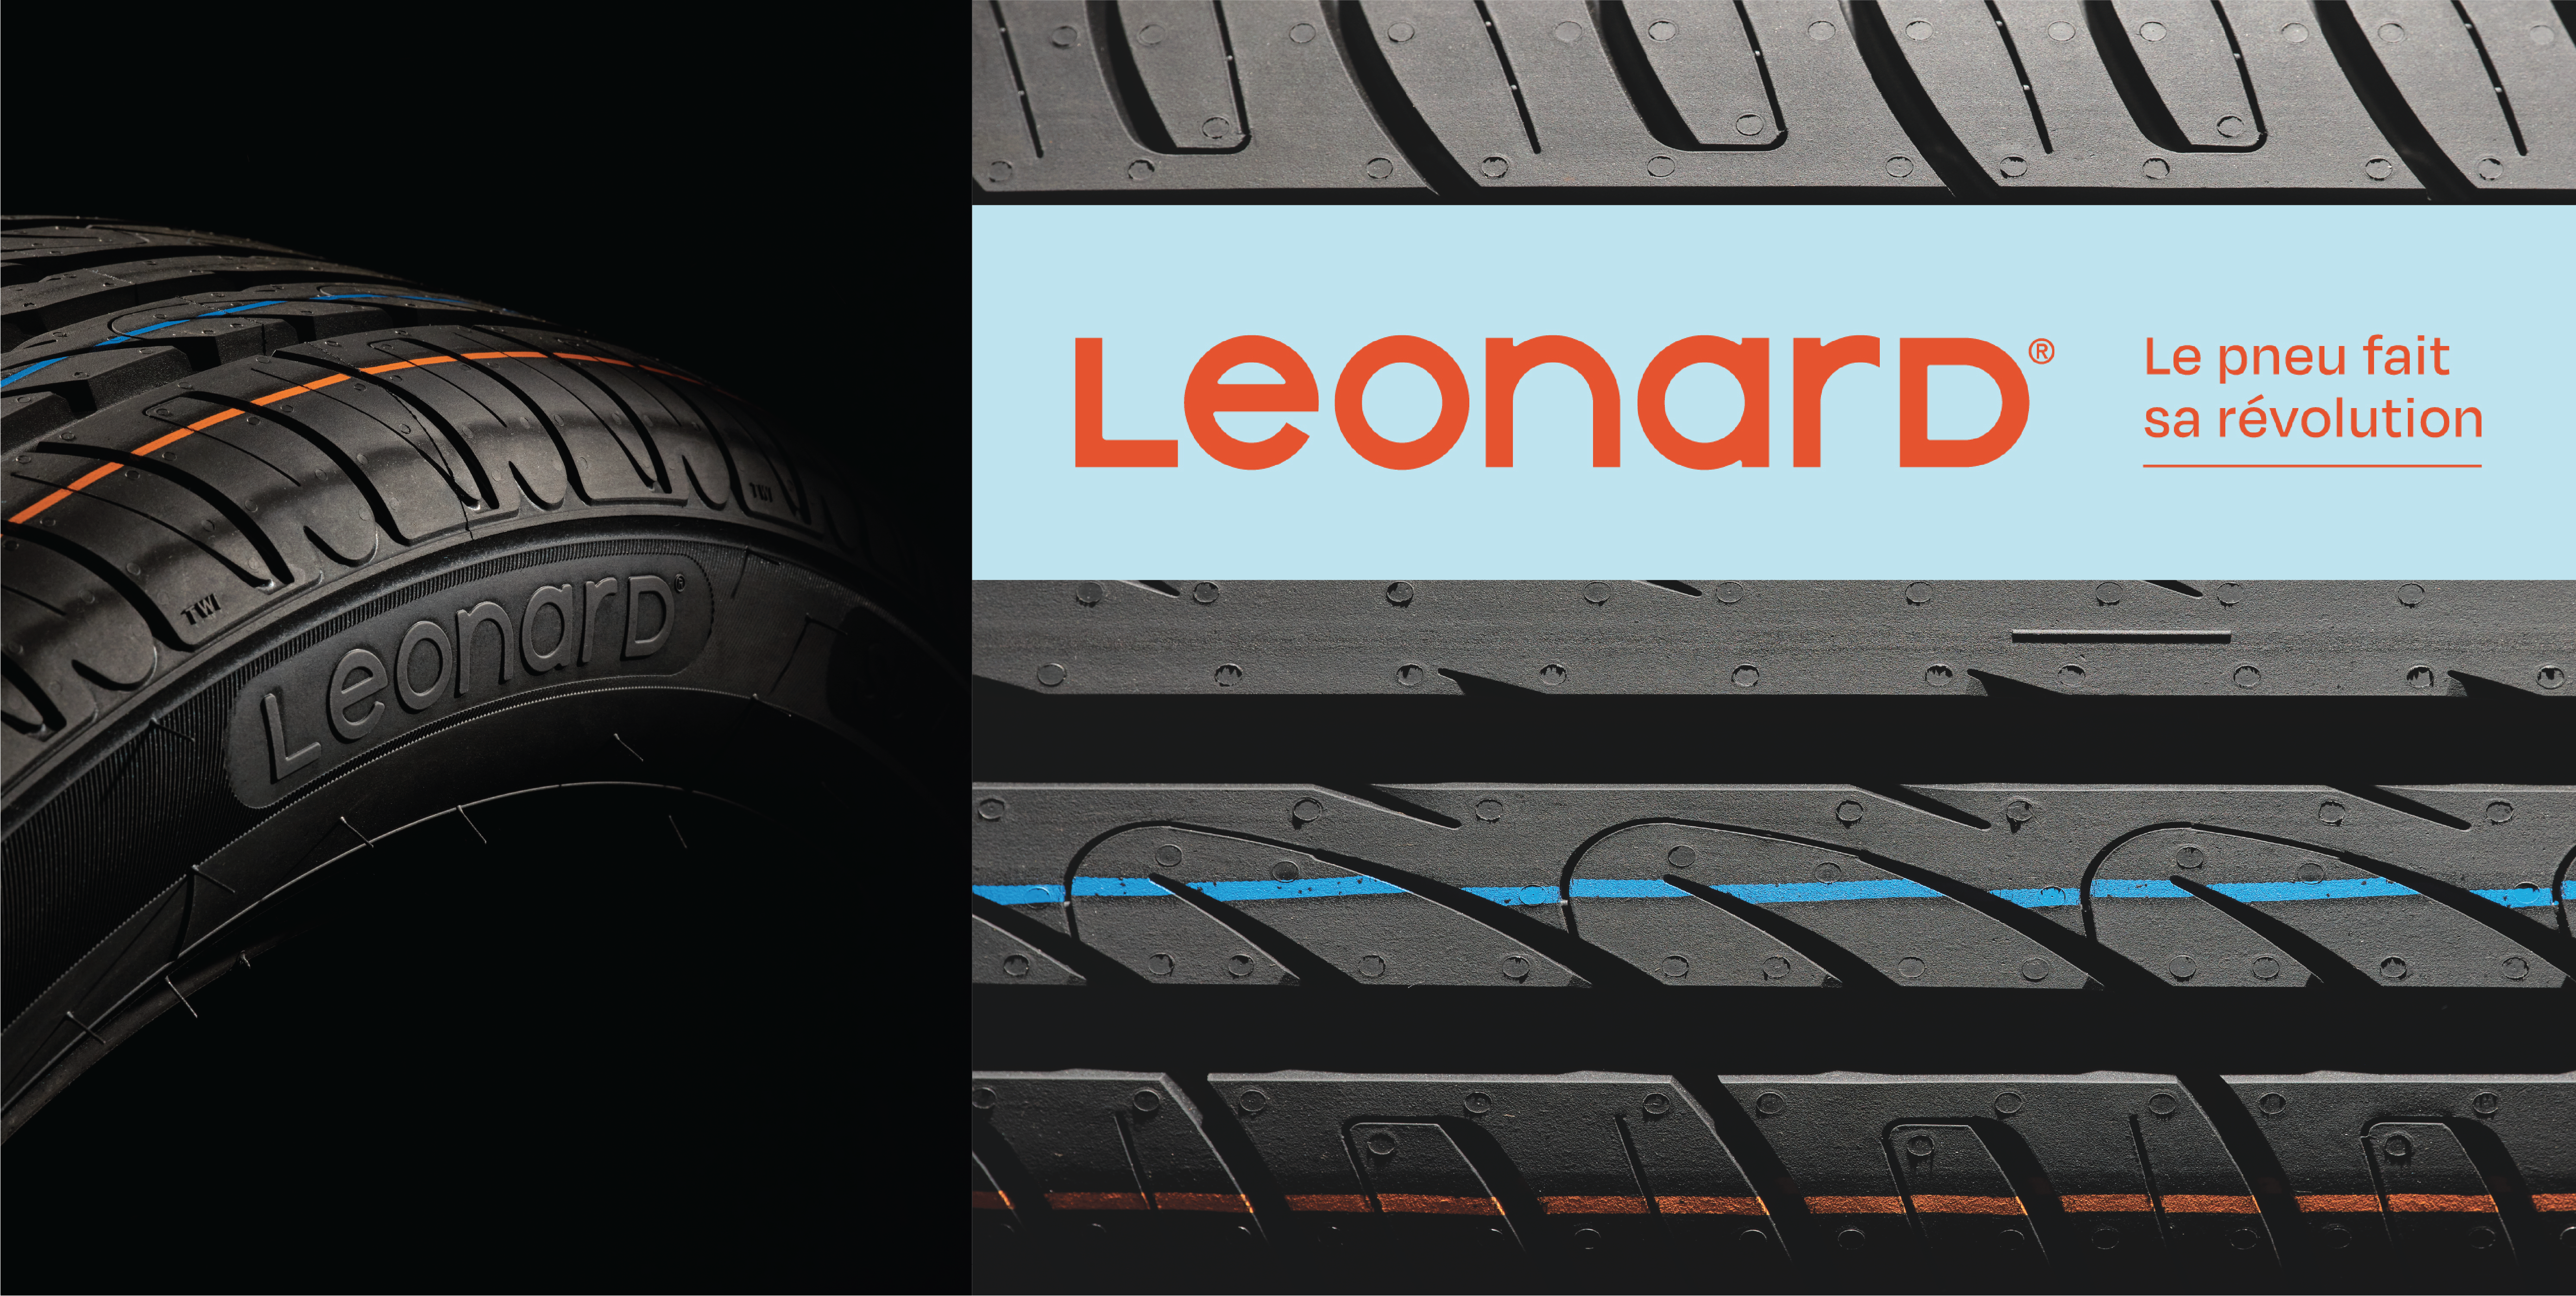 Leonard, la nouvelle étoile de Black Star, illumine le monde du pneu reconditonné